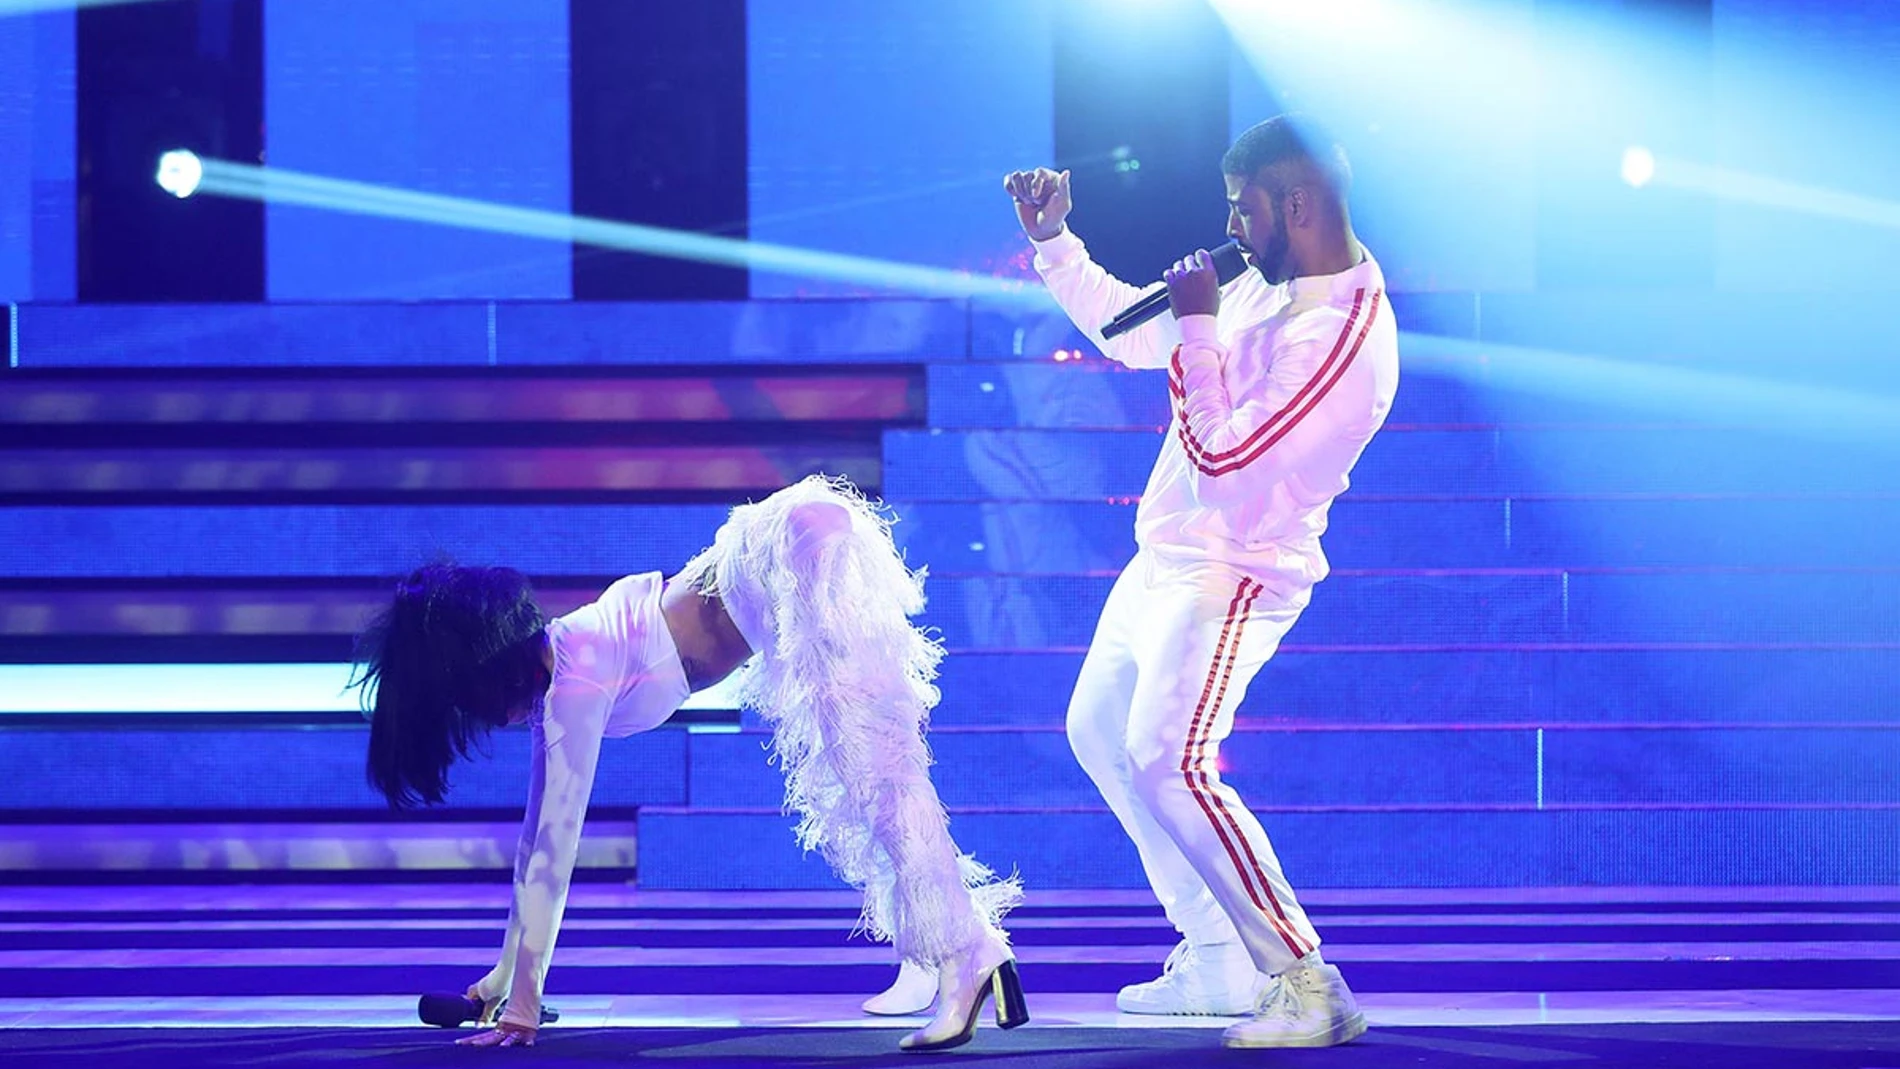 Beatriz Luengo y Yotuel suben la temperatura con su twerking como Rihanna y Drake en “Work”